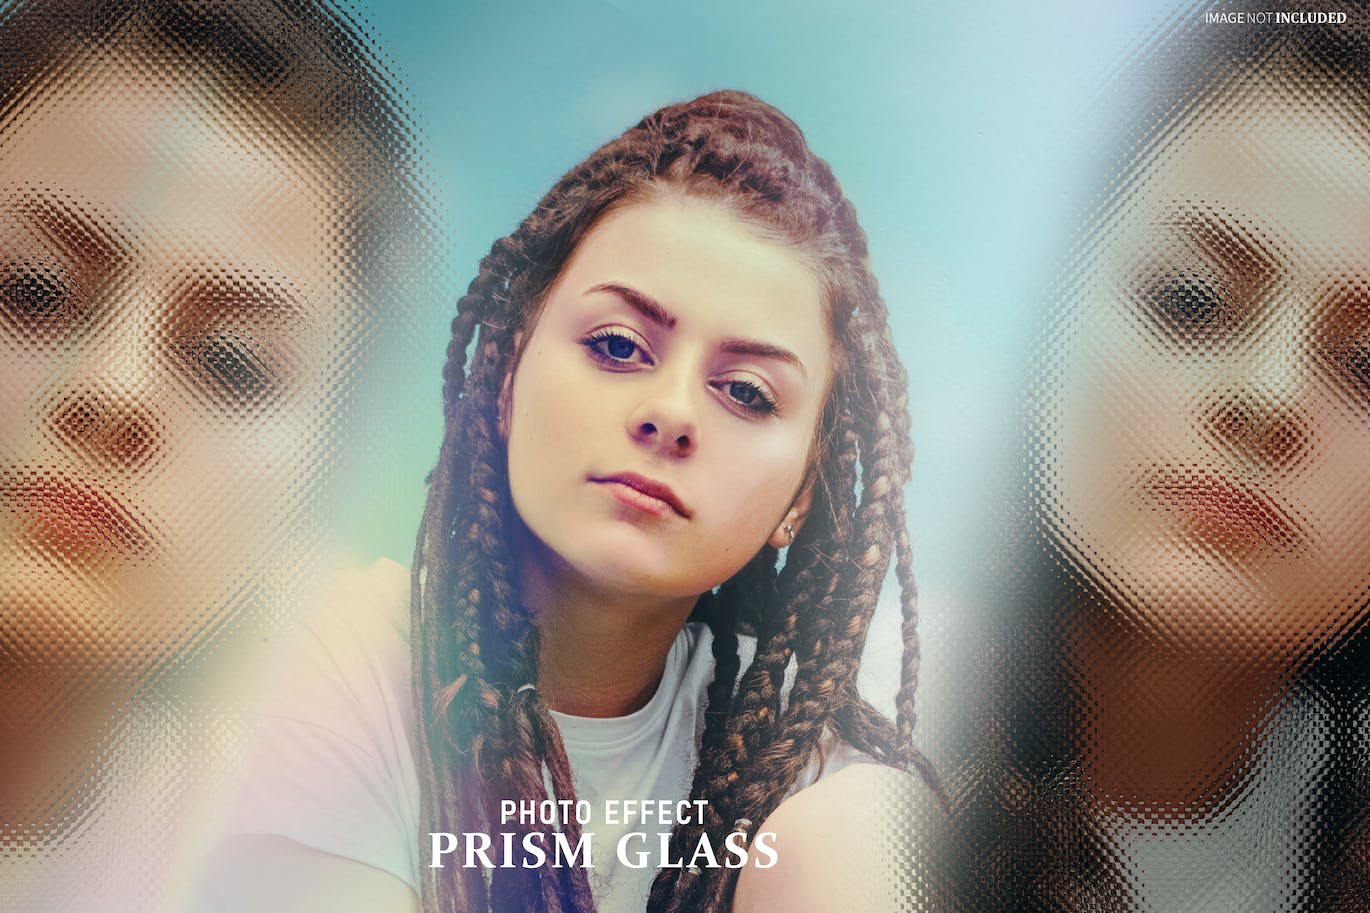 棱镜玻璃照片特效PS图层样式 Prism Glass Photo Effect 插件预设 第1张